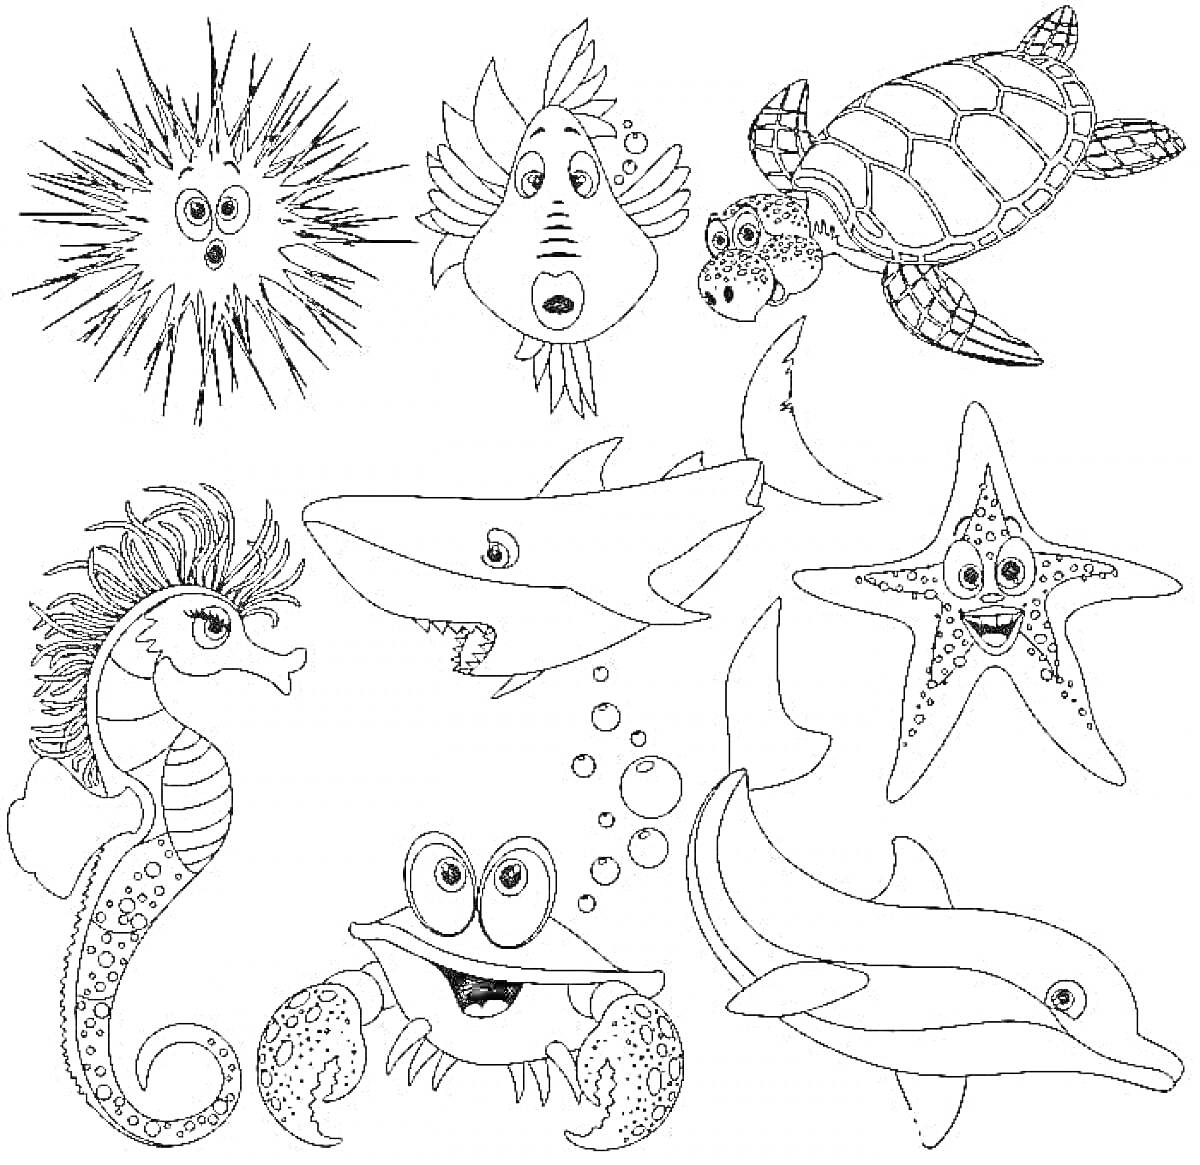 Раскраска Рыбка, морской ёж, черепаха, морская звезда, акула, дельфин, морской конек, краб, рыбка-попугай